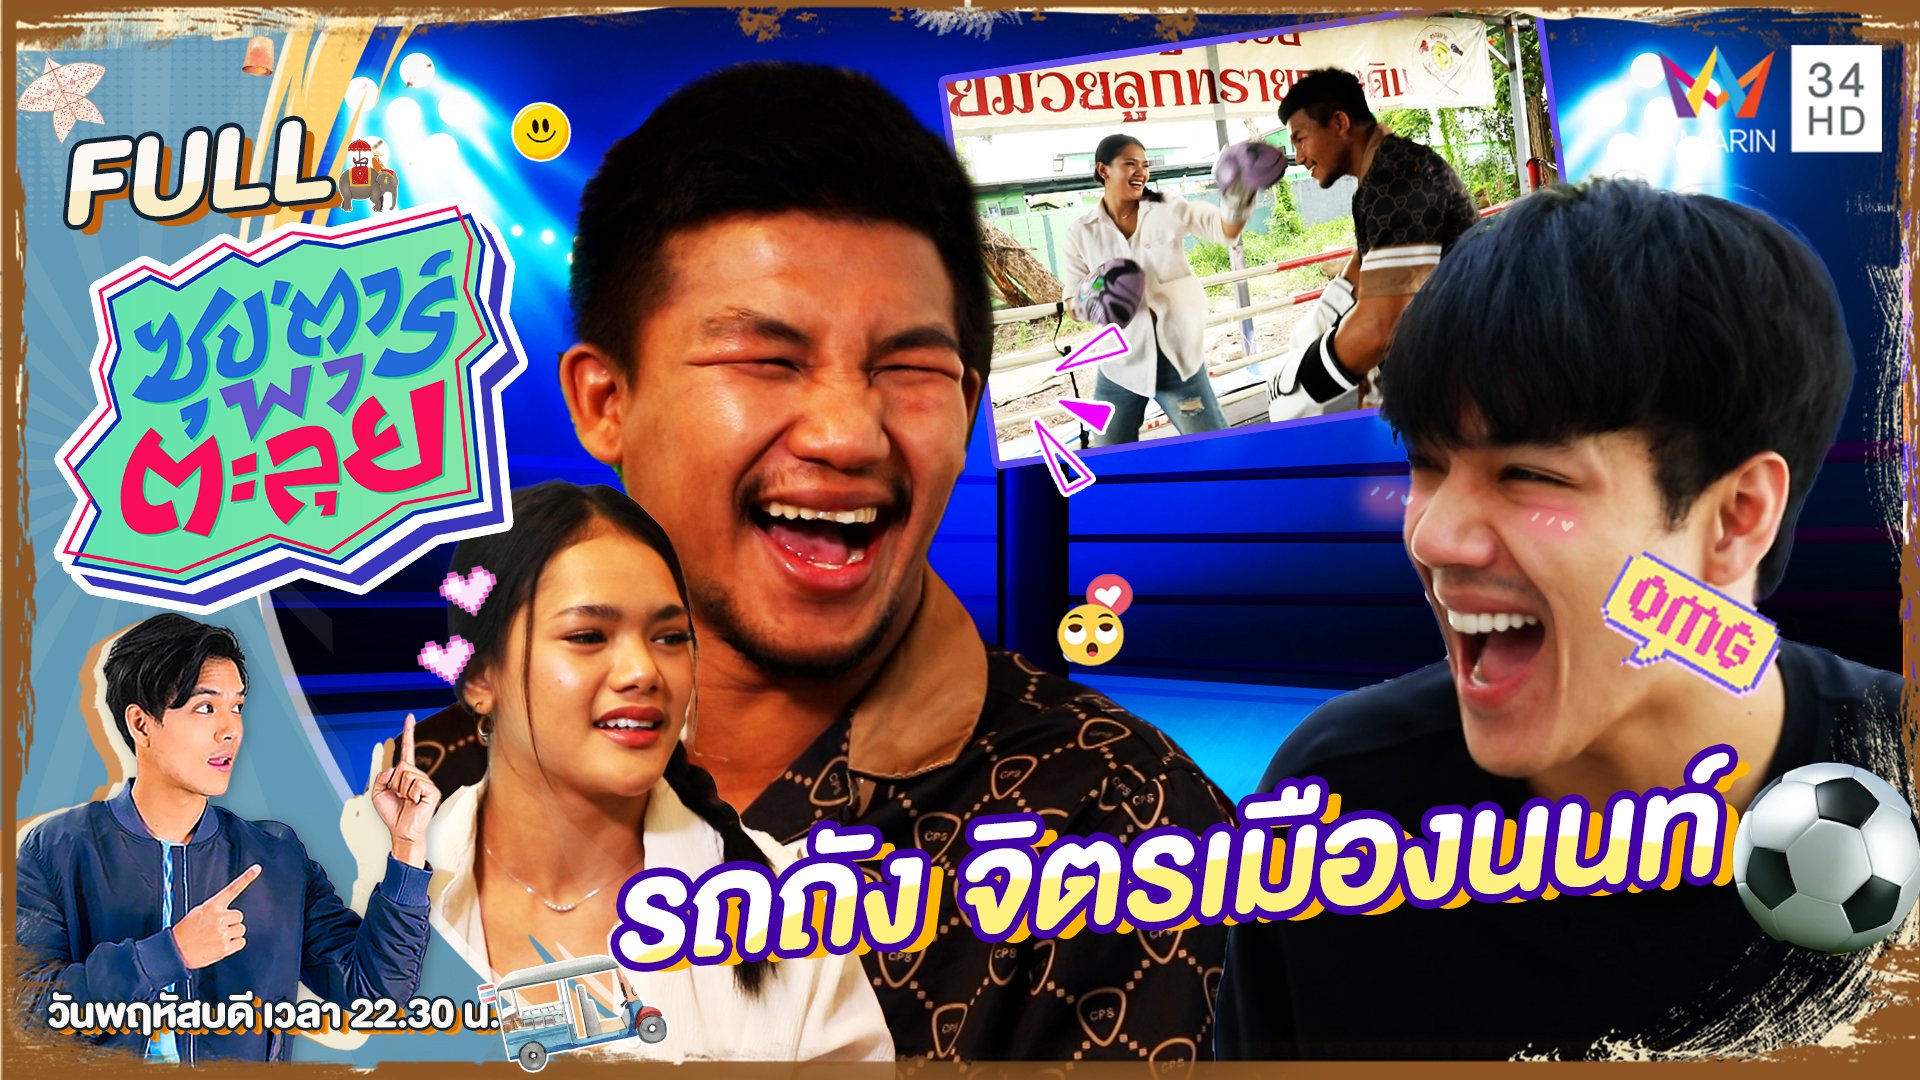 "รถถัง จิตรเมืองนนท์" แชมป์โลกมวยไทย | ซุปตาร์พาตะลุย | 27 ก.ค. 66 | AMARIN TVHD34